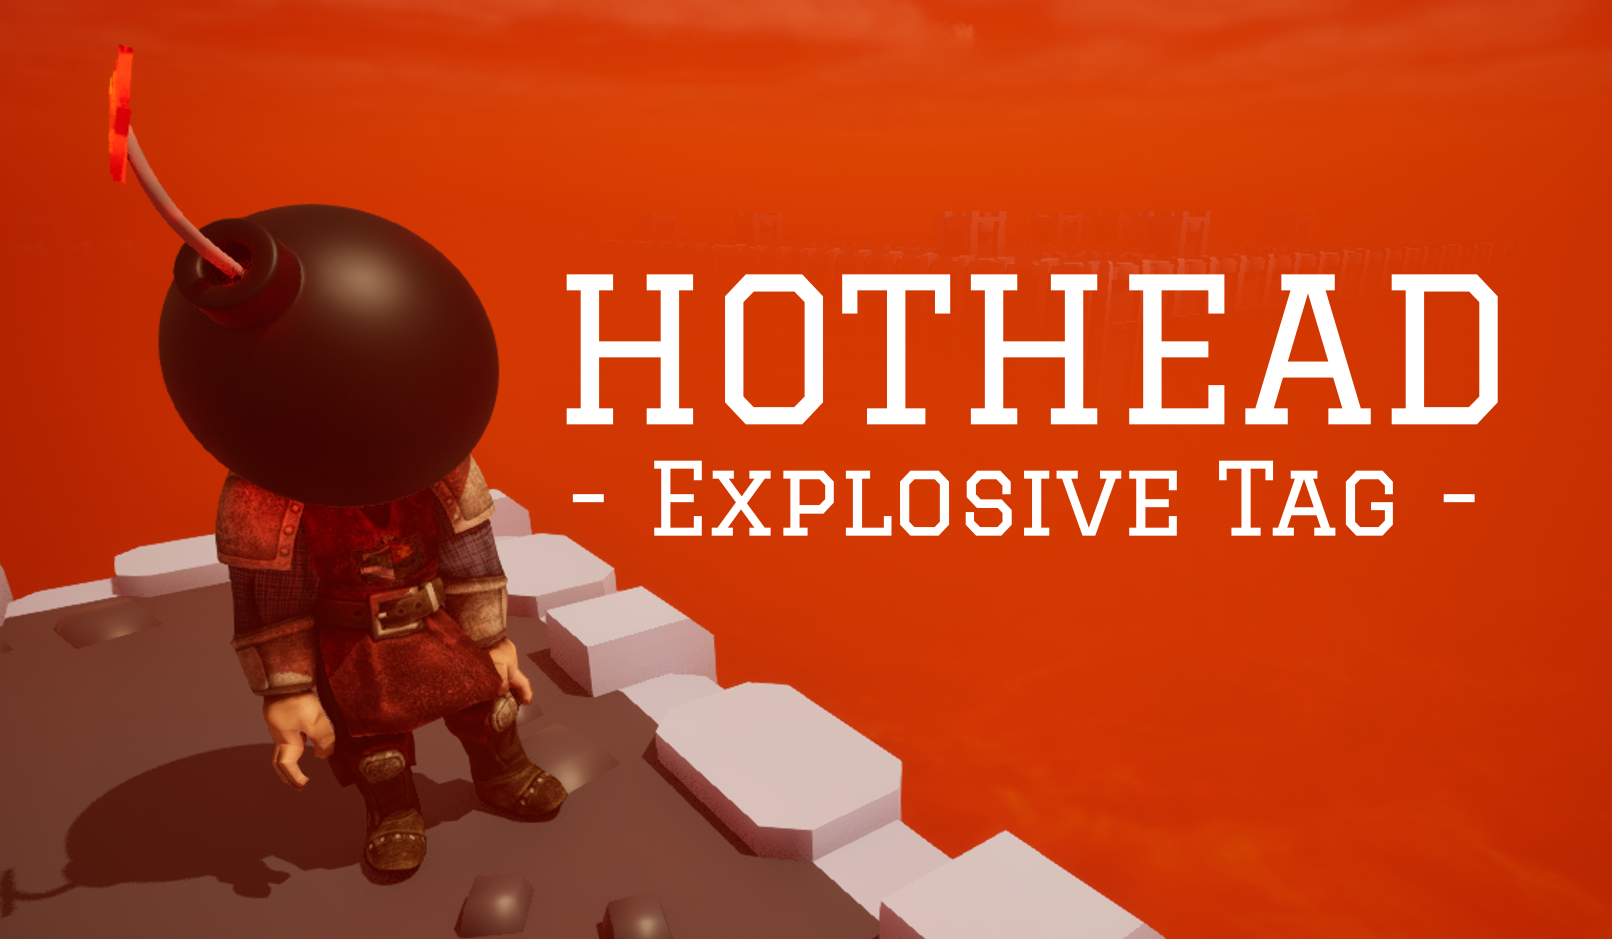 Hothead - Explosive Tag